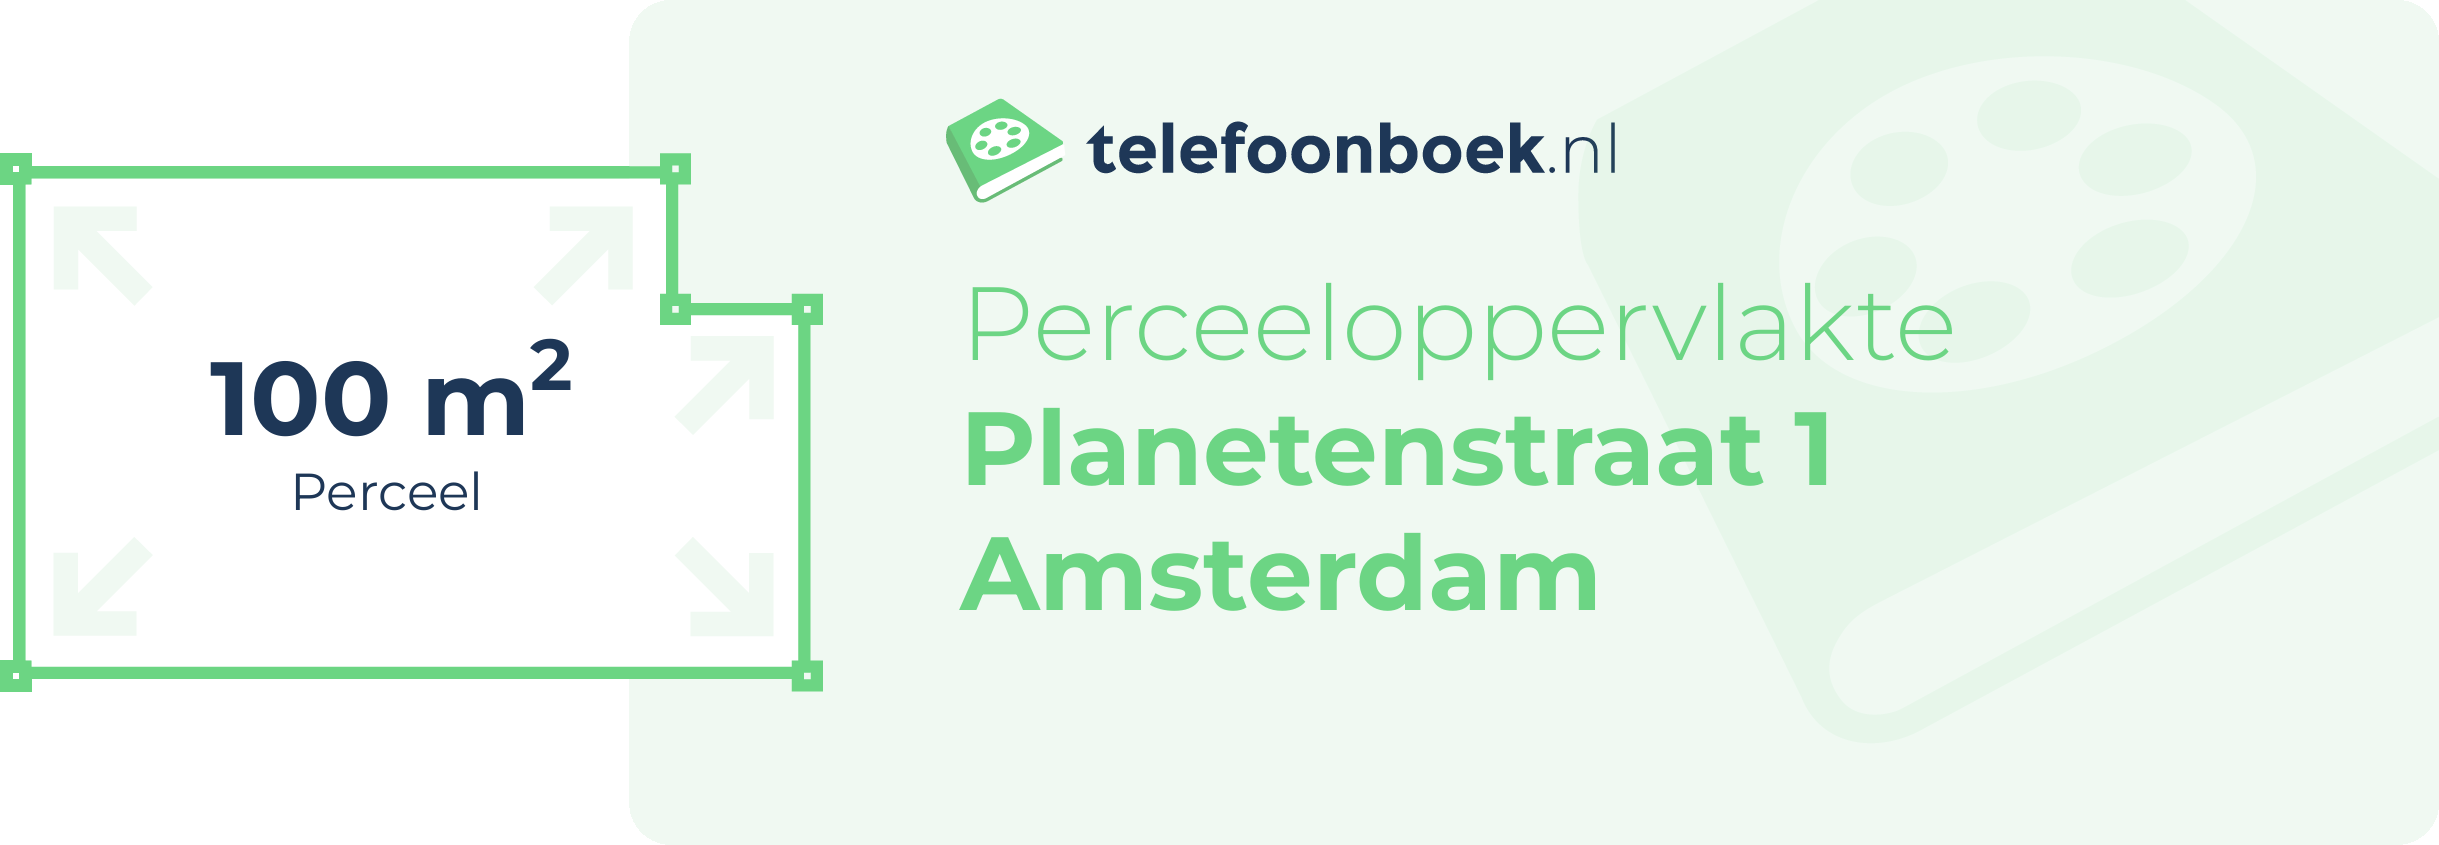 Perceeloppervlakte Planetenstraat 1 Amsterdam